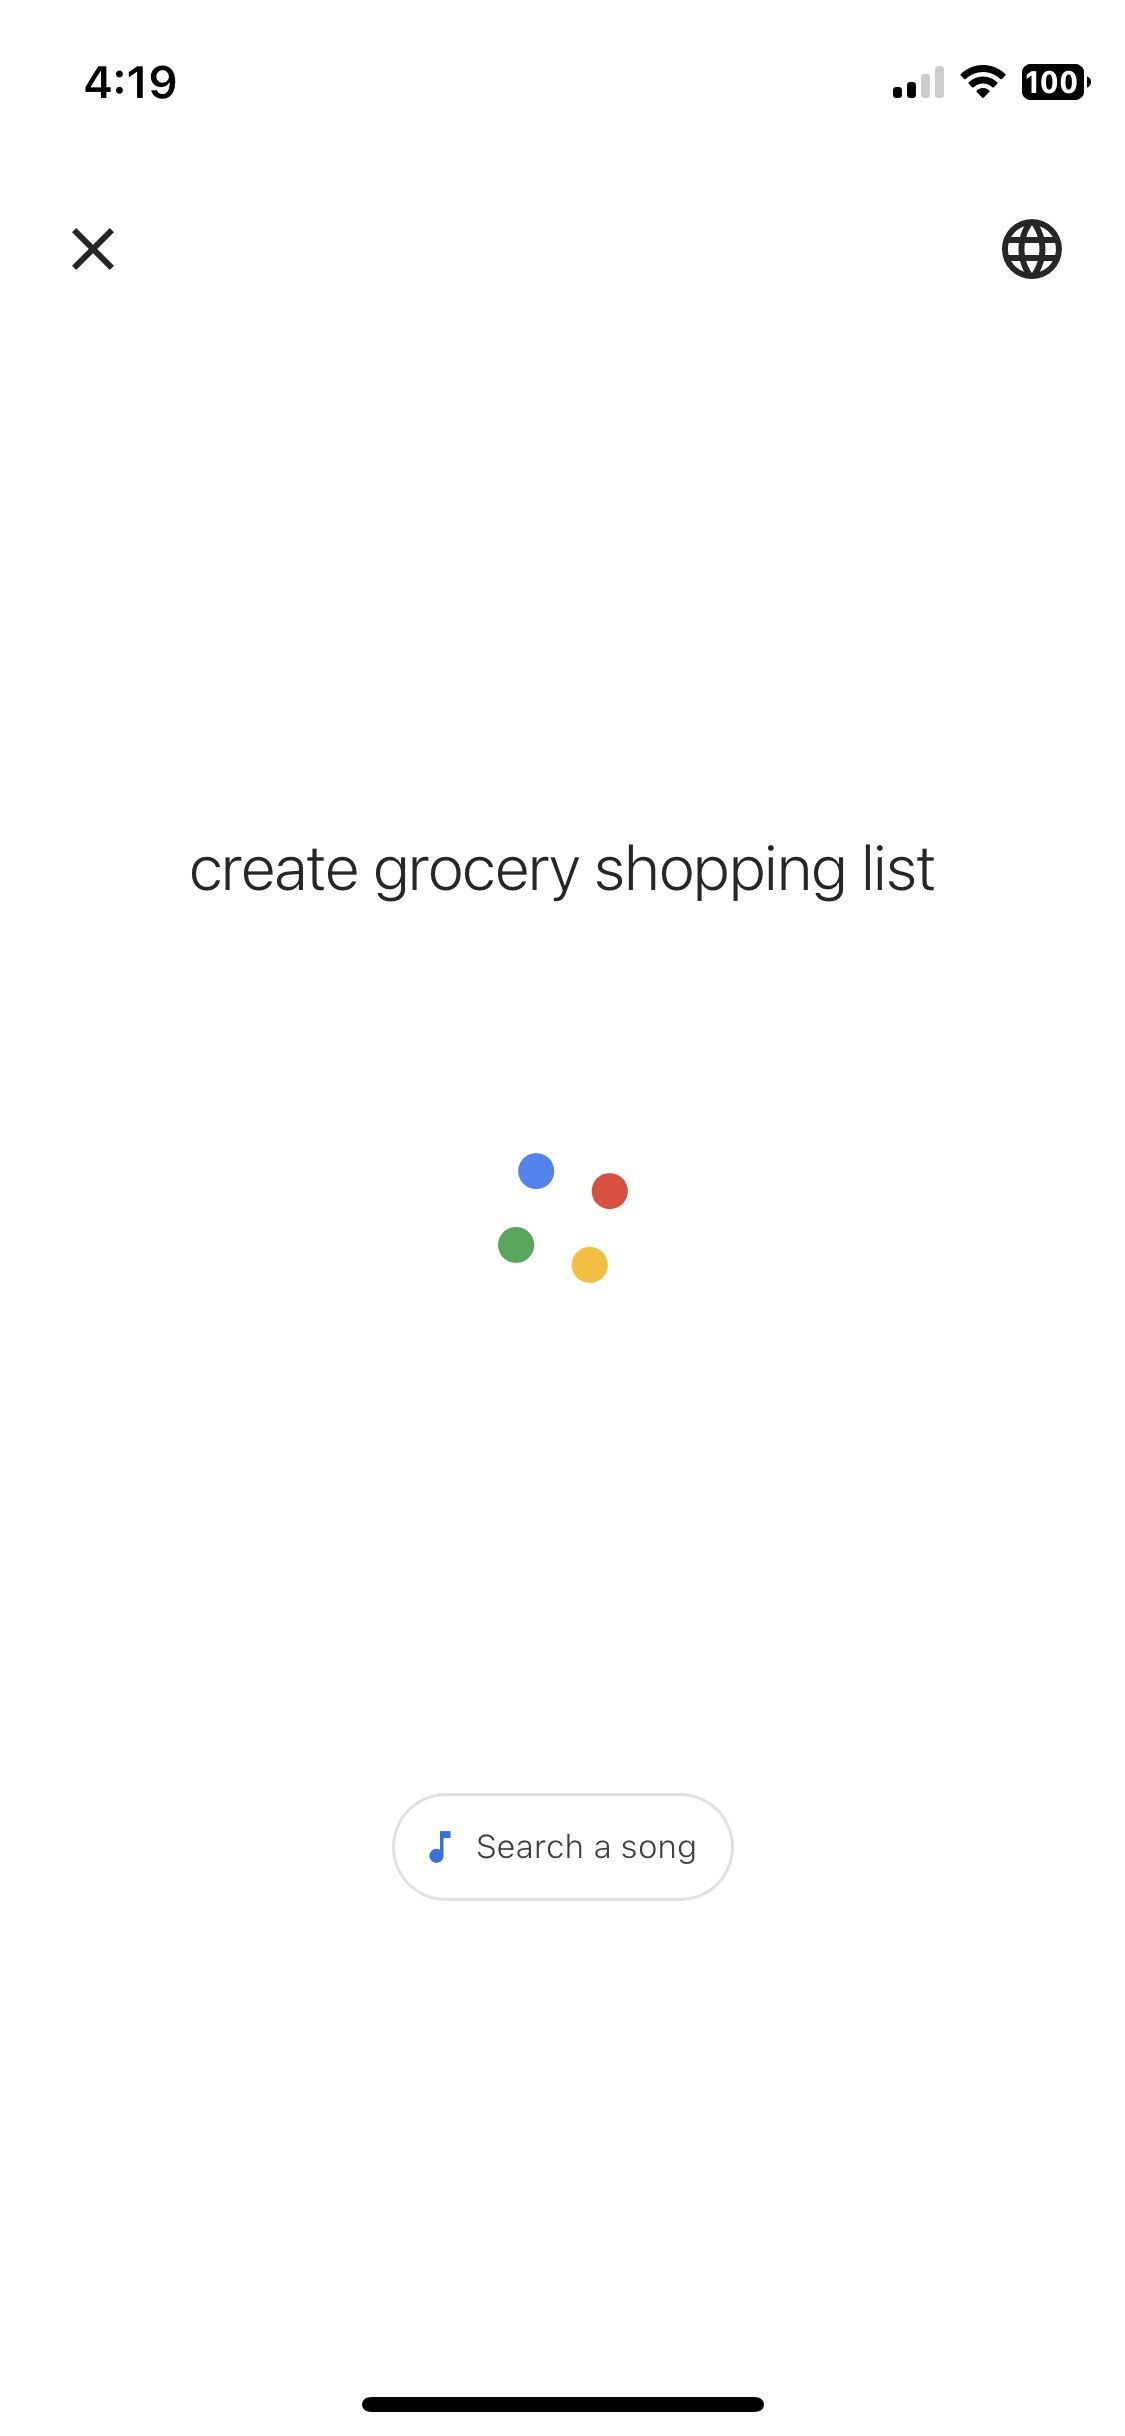 Captura de tela mostrando o uso do Google Assistente para criar uma nova lista de compras de supermercado